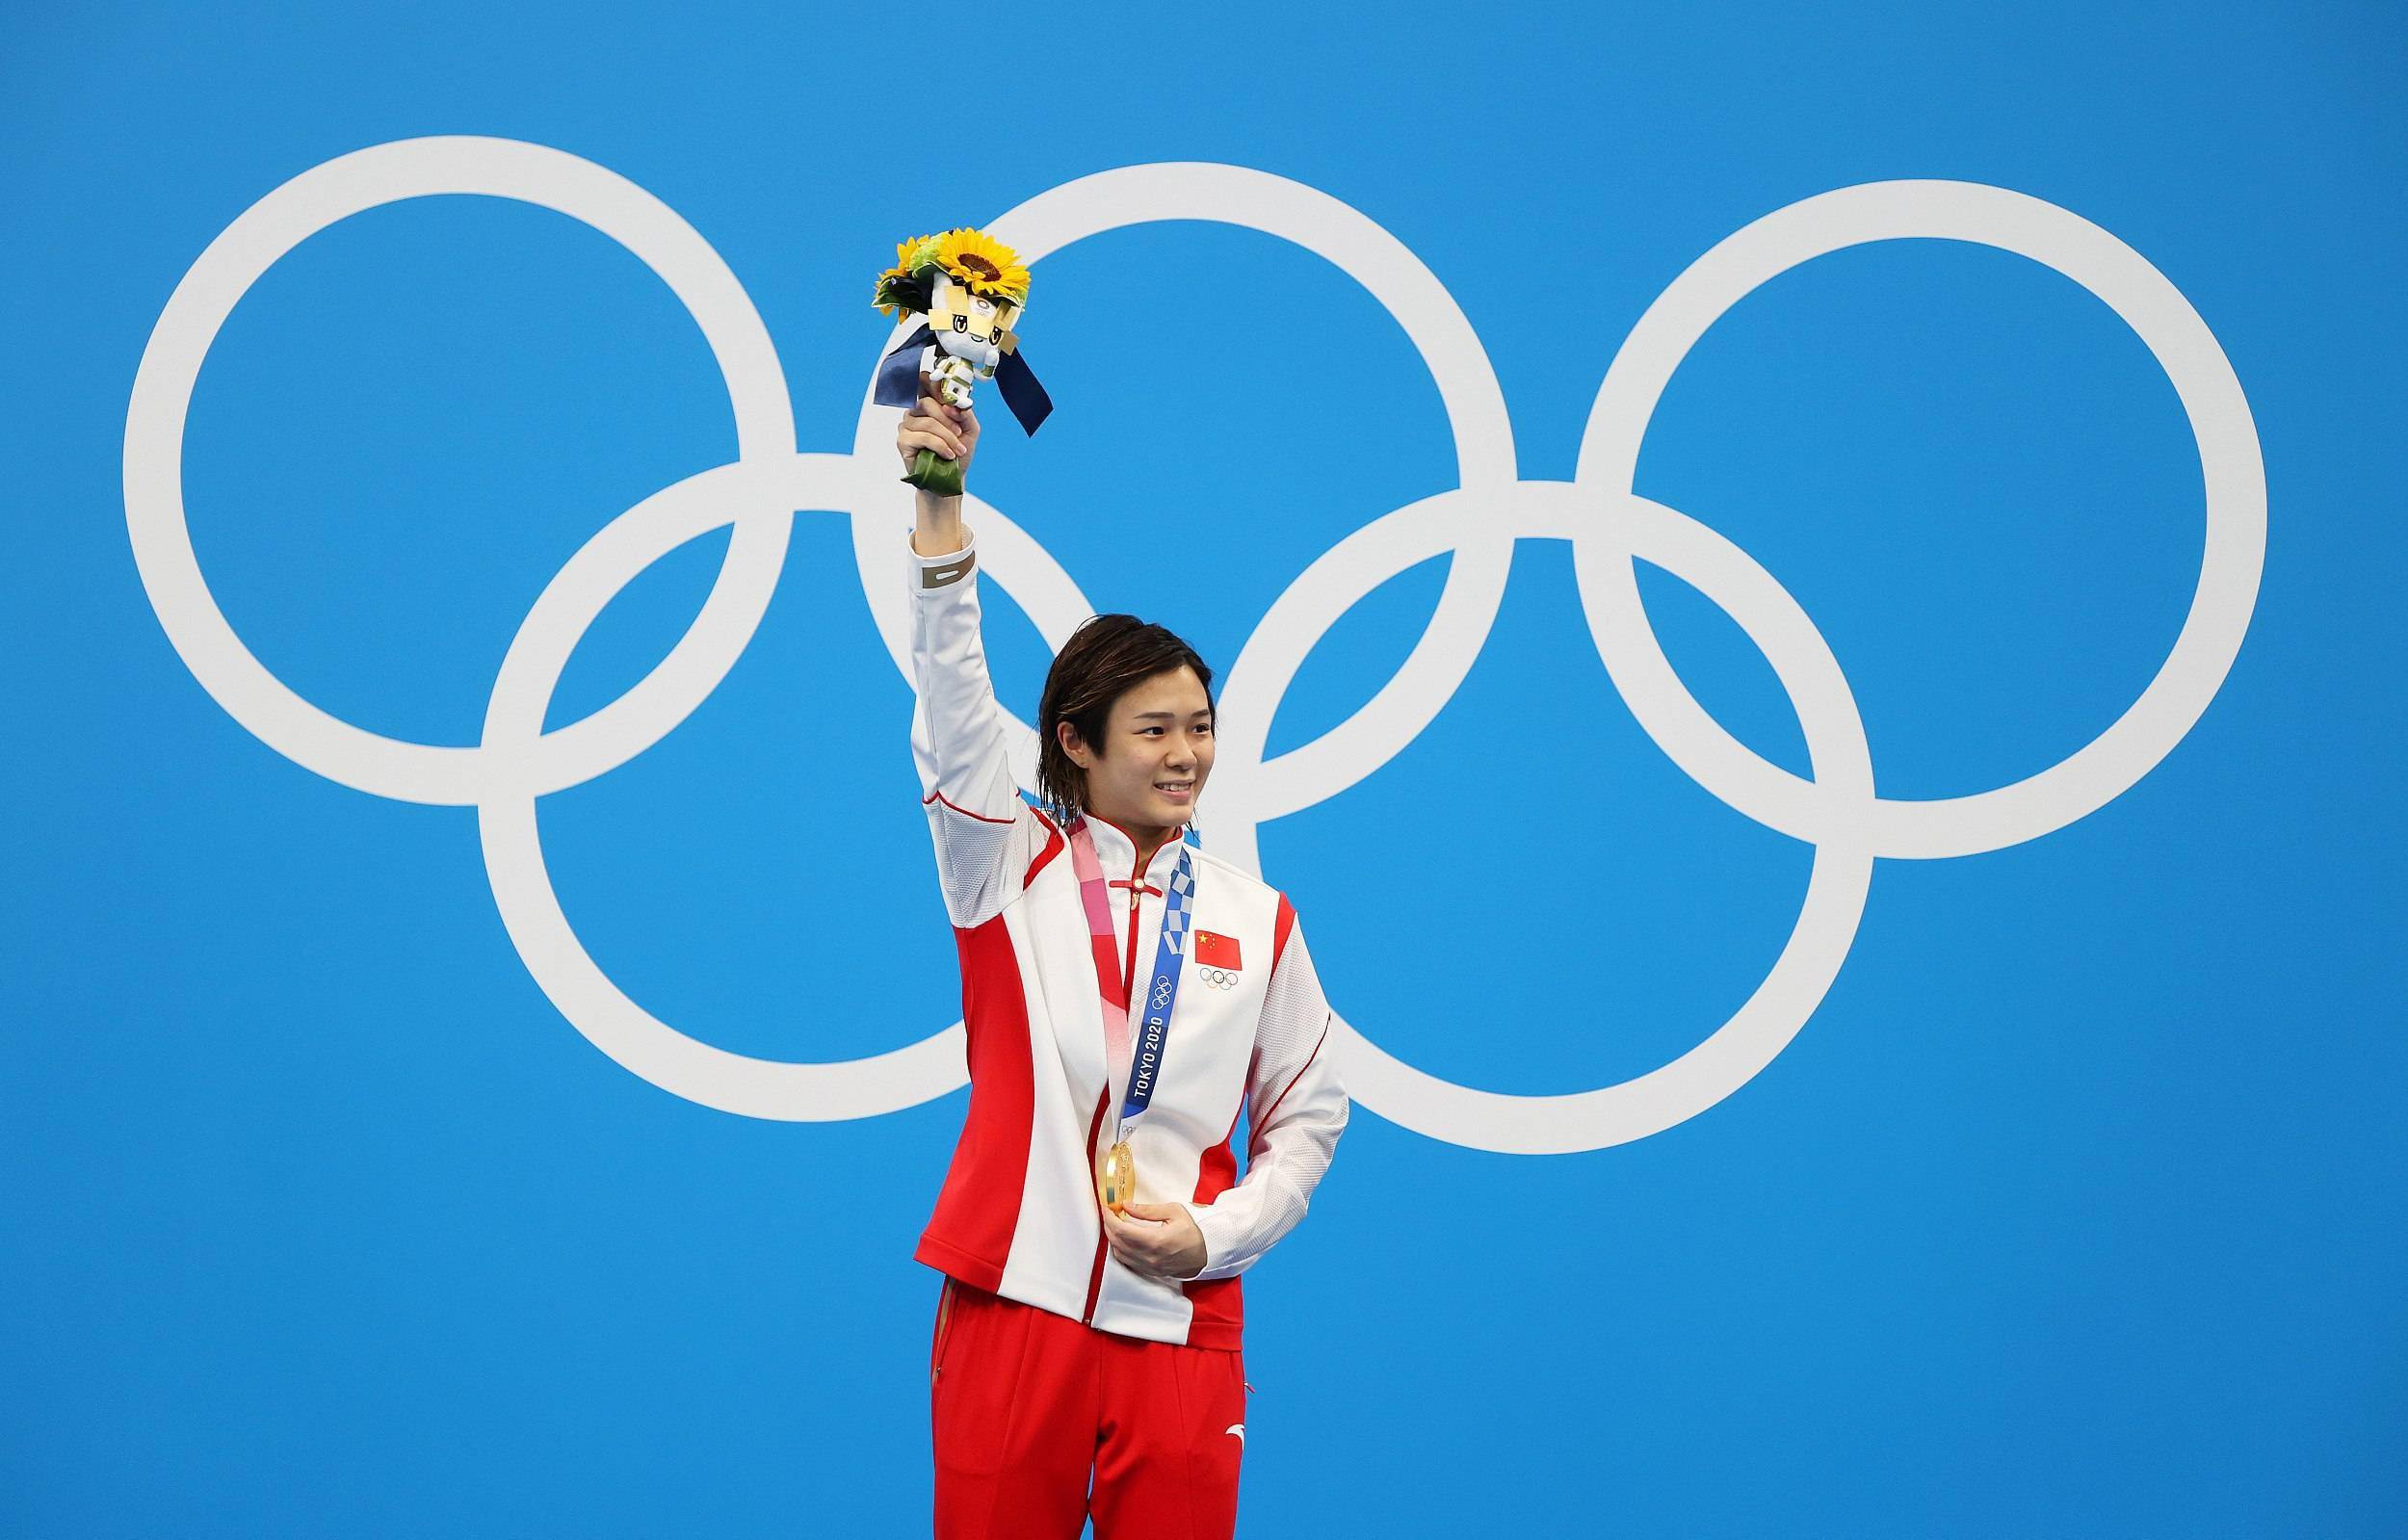 东京奥运中国38金全纪录!回顾奥运健儿振奋人心的金牌时刻